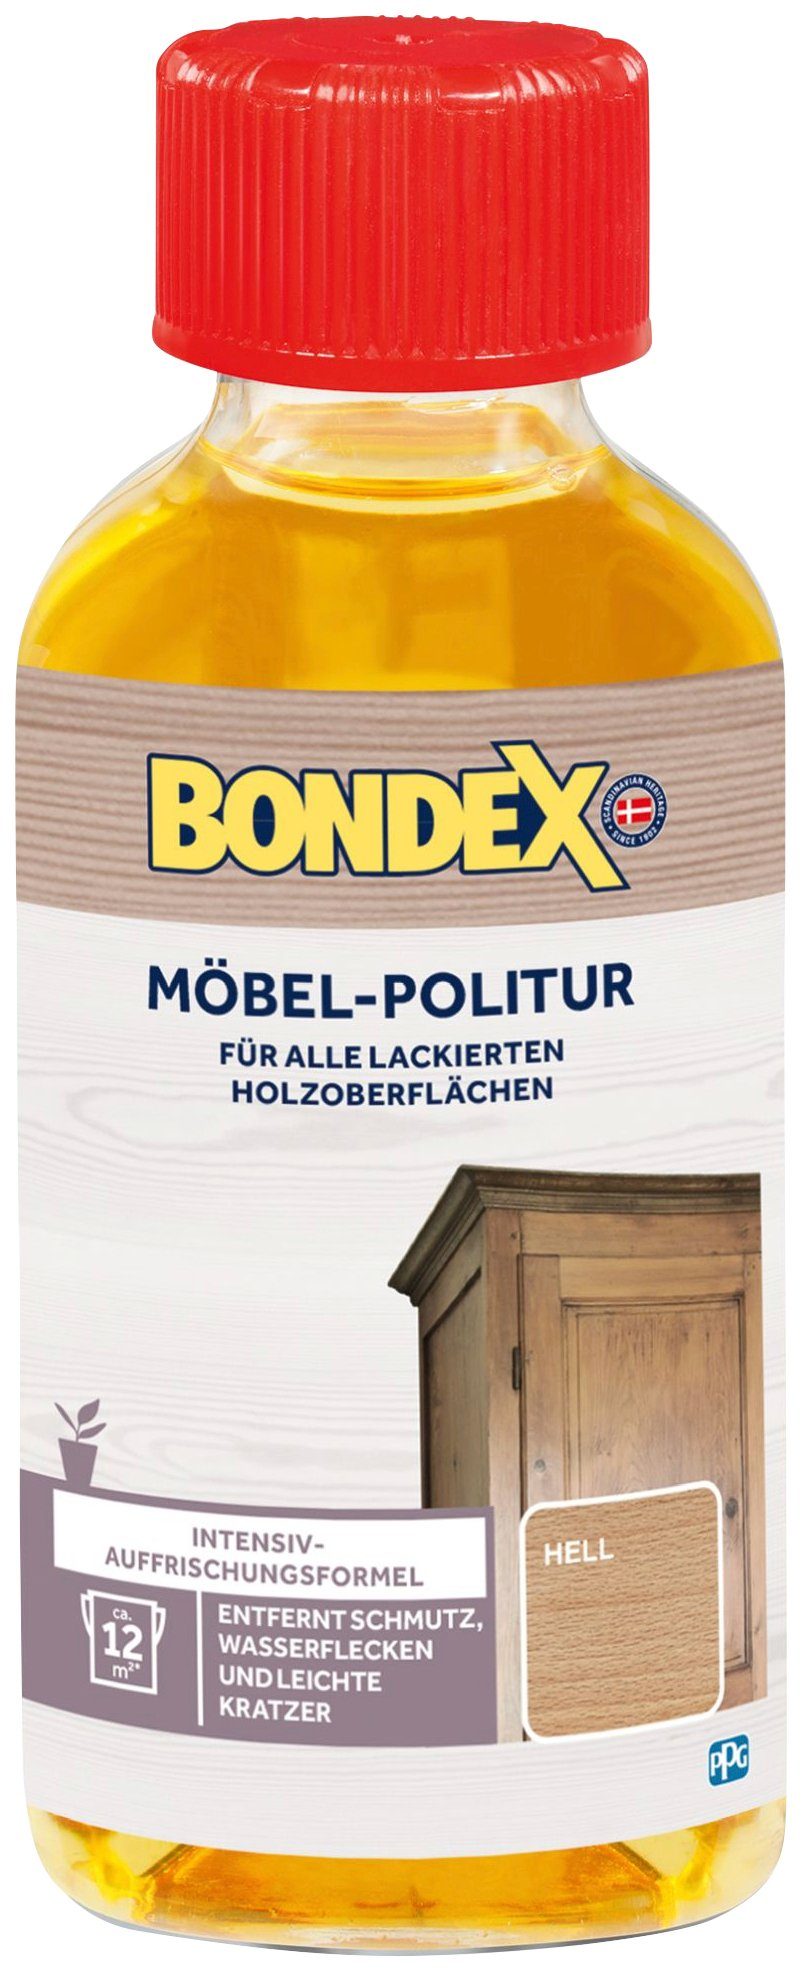 Bondex MÖBEL-POLITUR natur l 0,15 Holzpflegeöl, Dunkel